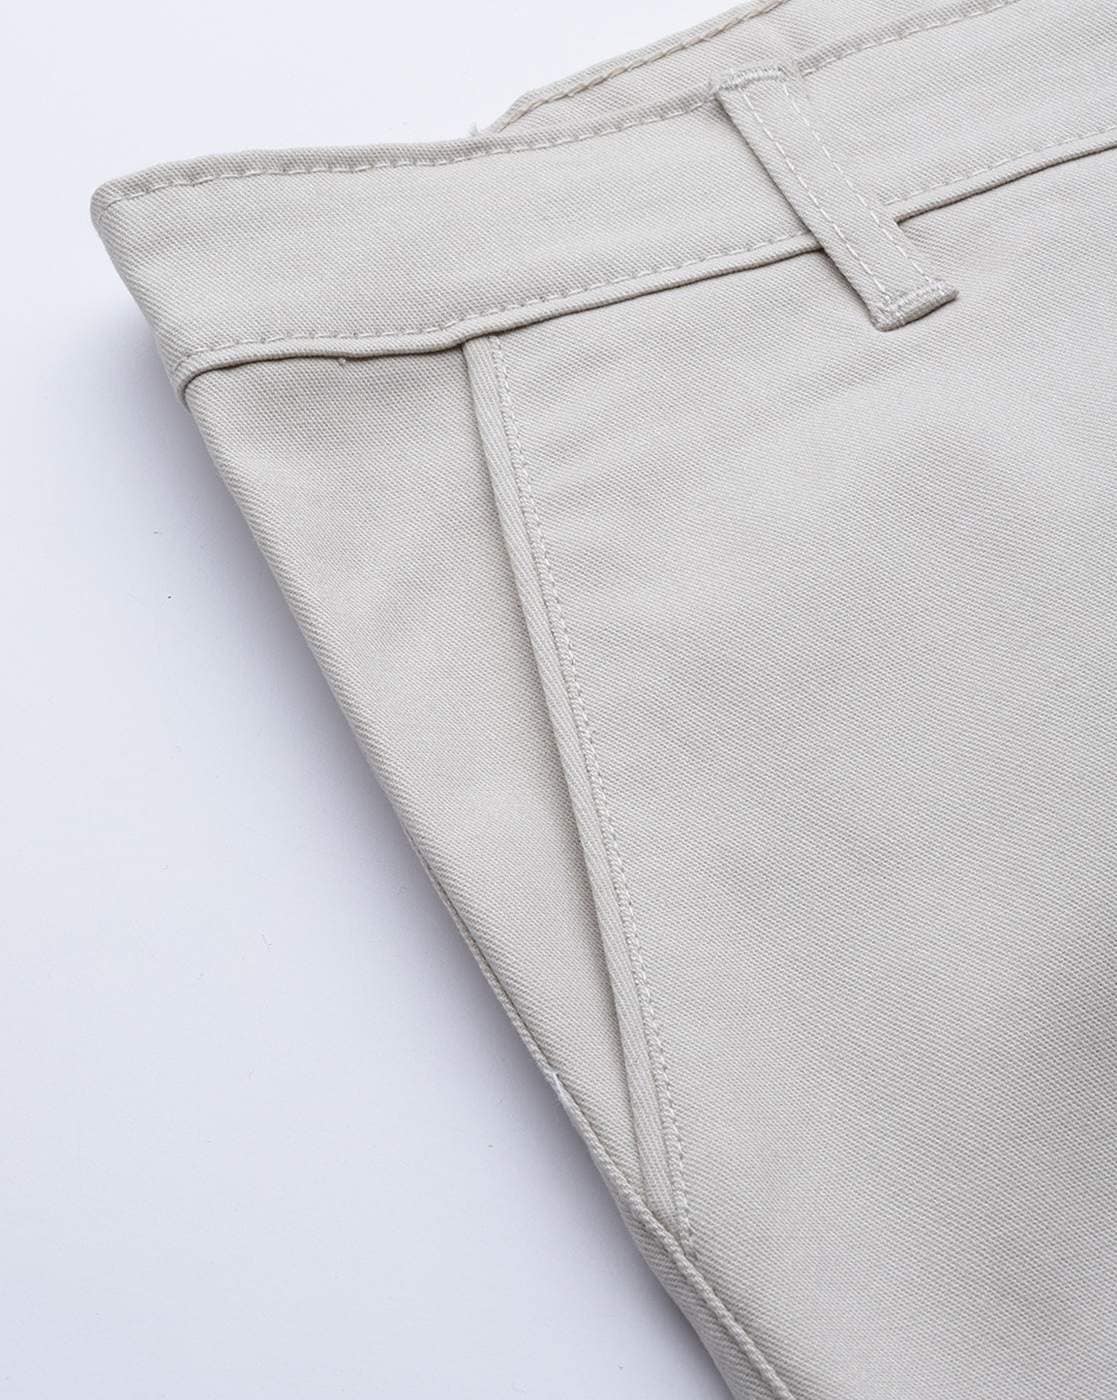 Buy Cream Trousers & Pants for Men by Hubberholme Online